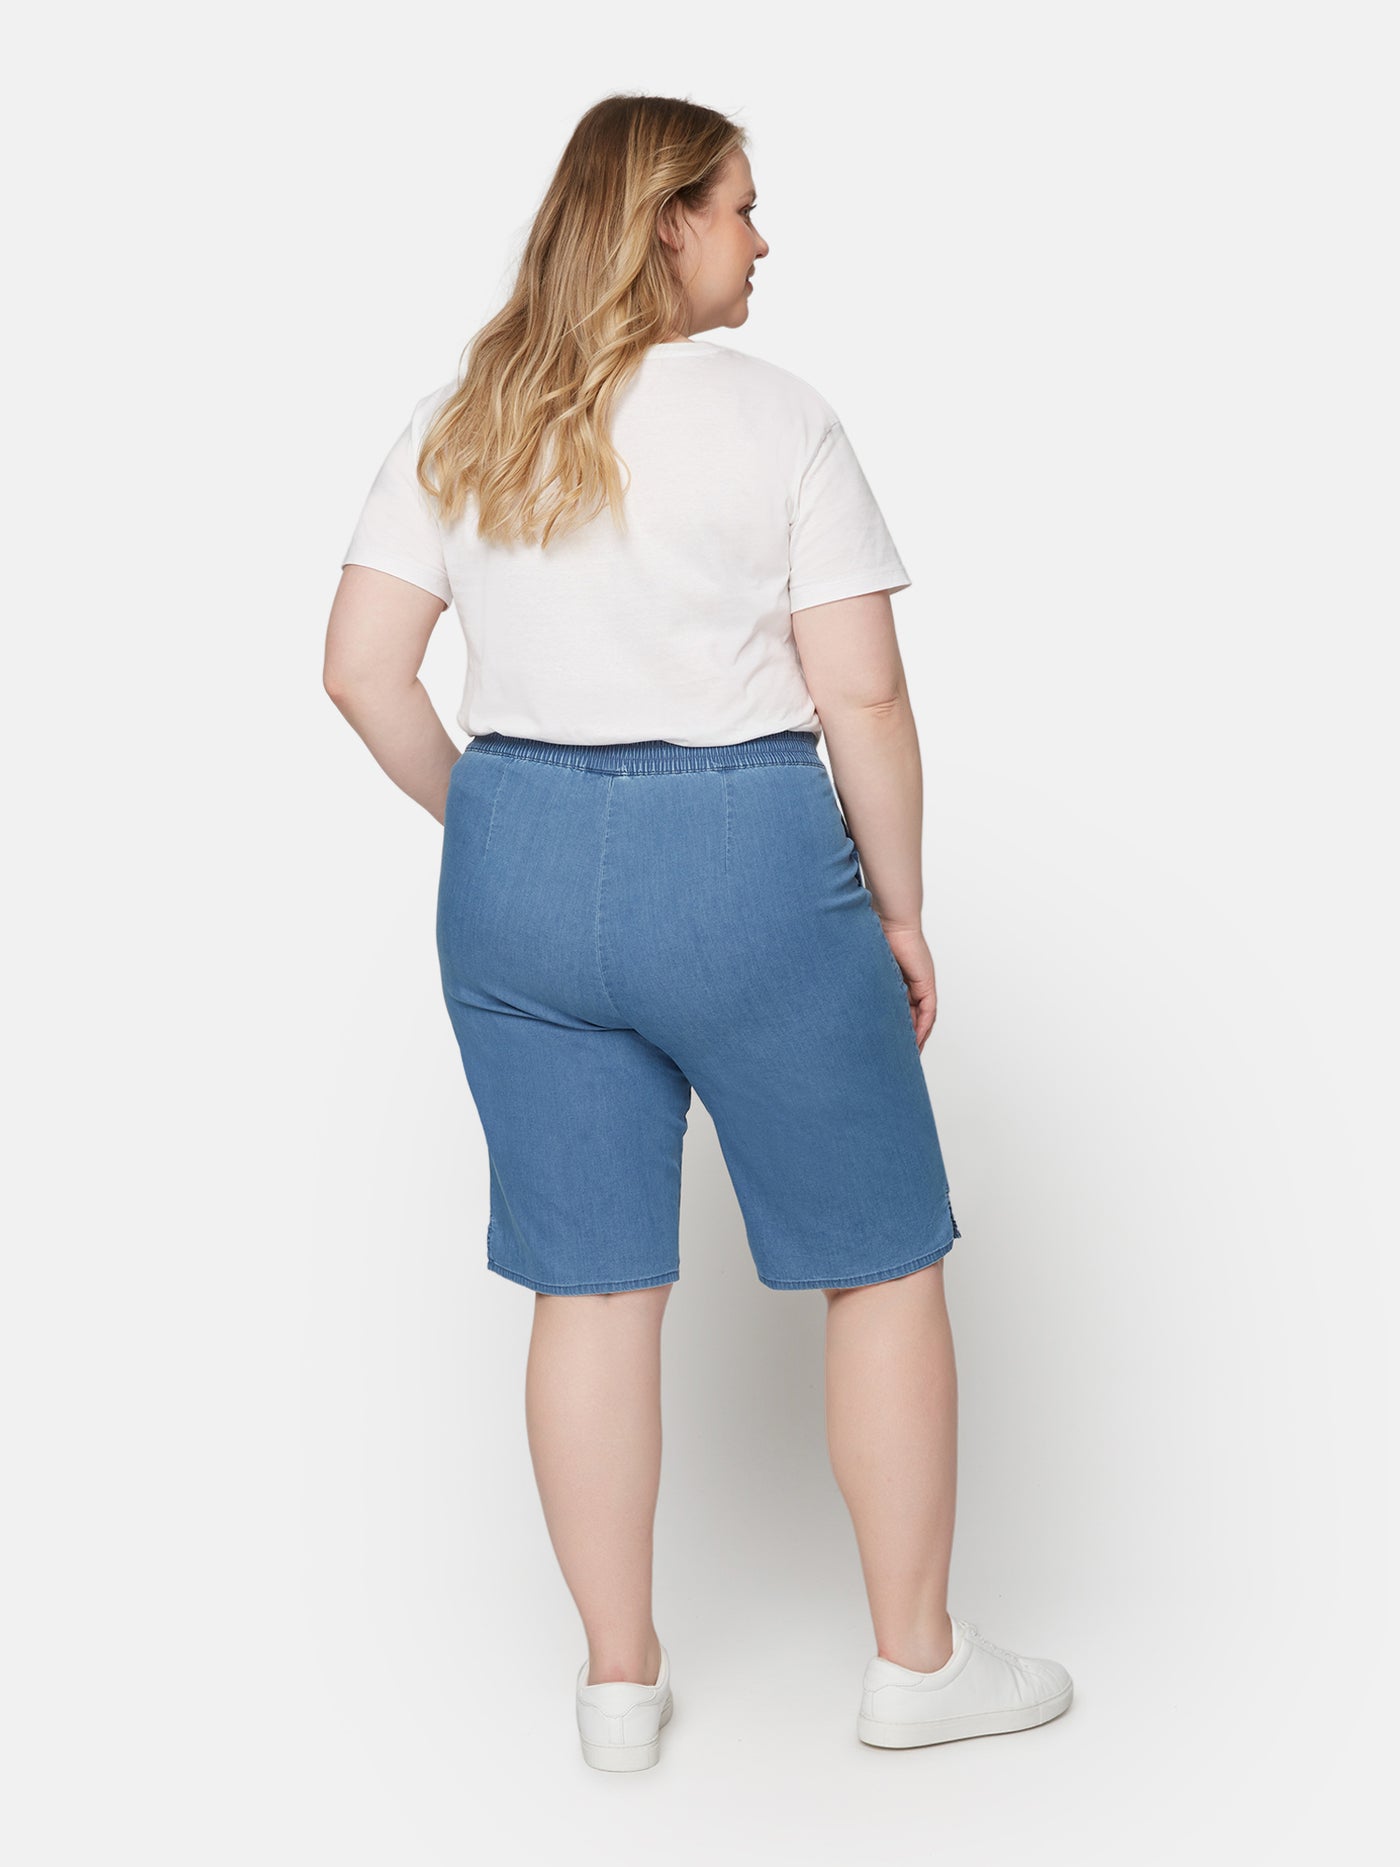 Shorts - Medium Blue Denim